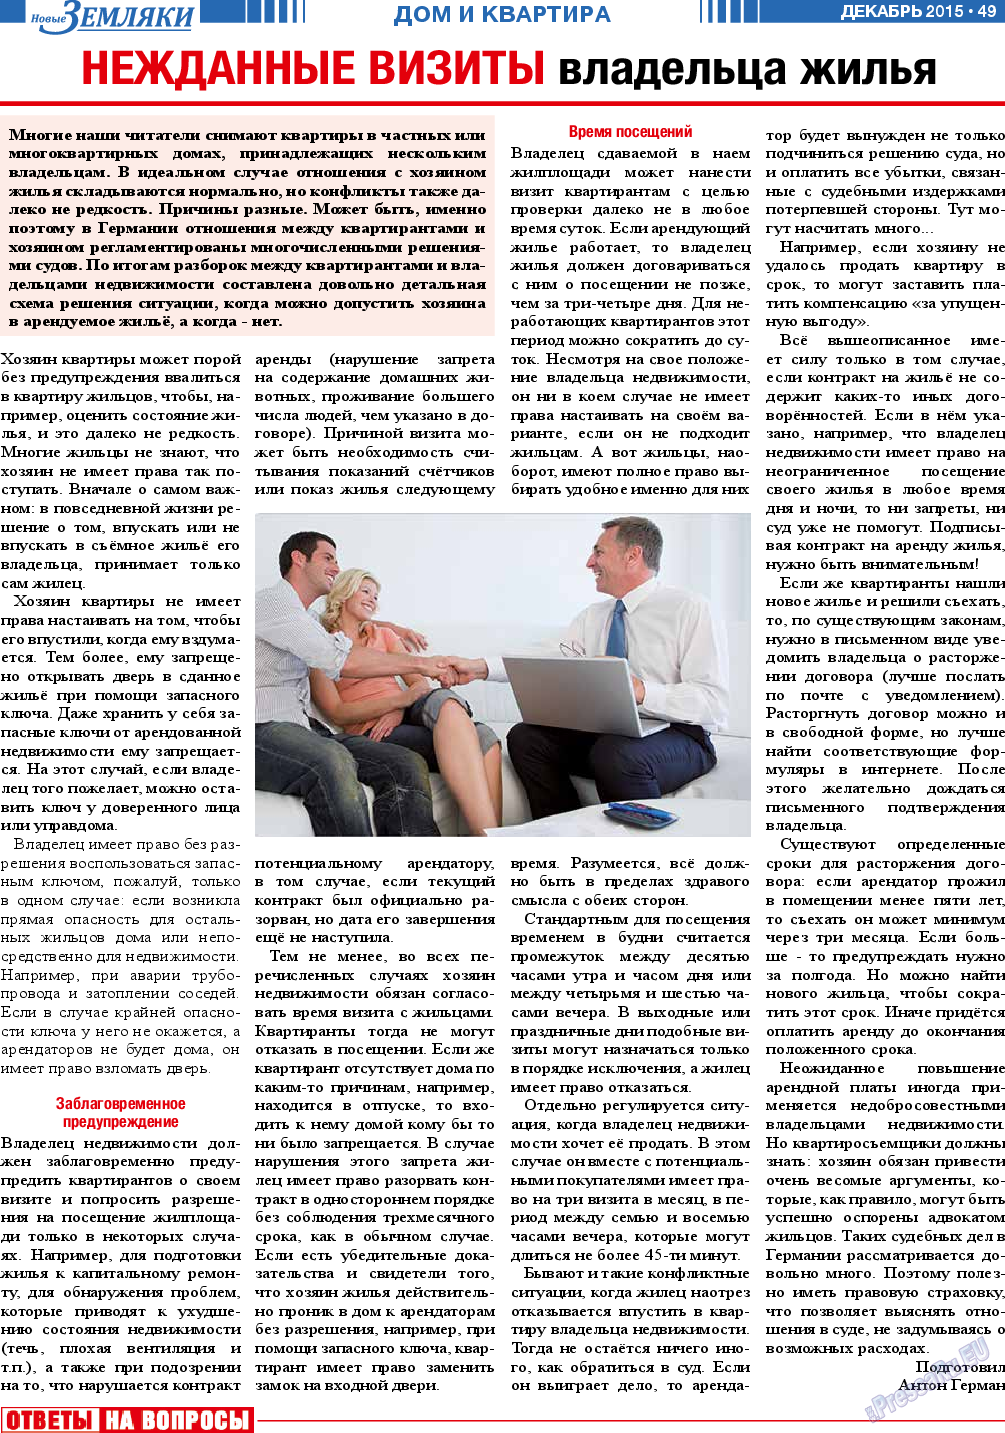 Новые Земляки (газета). 2015 год, номер 12, стр. 49